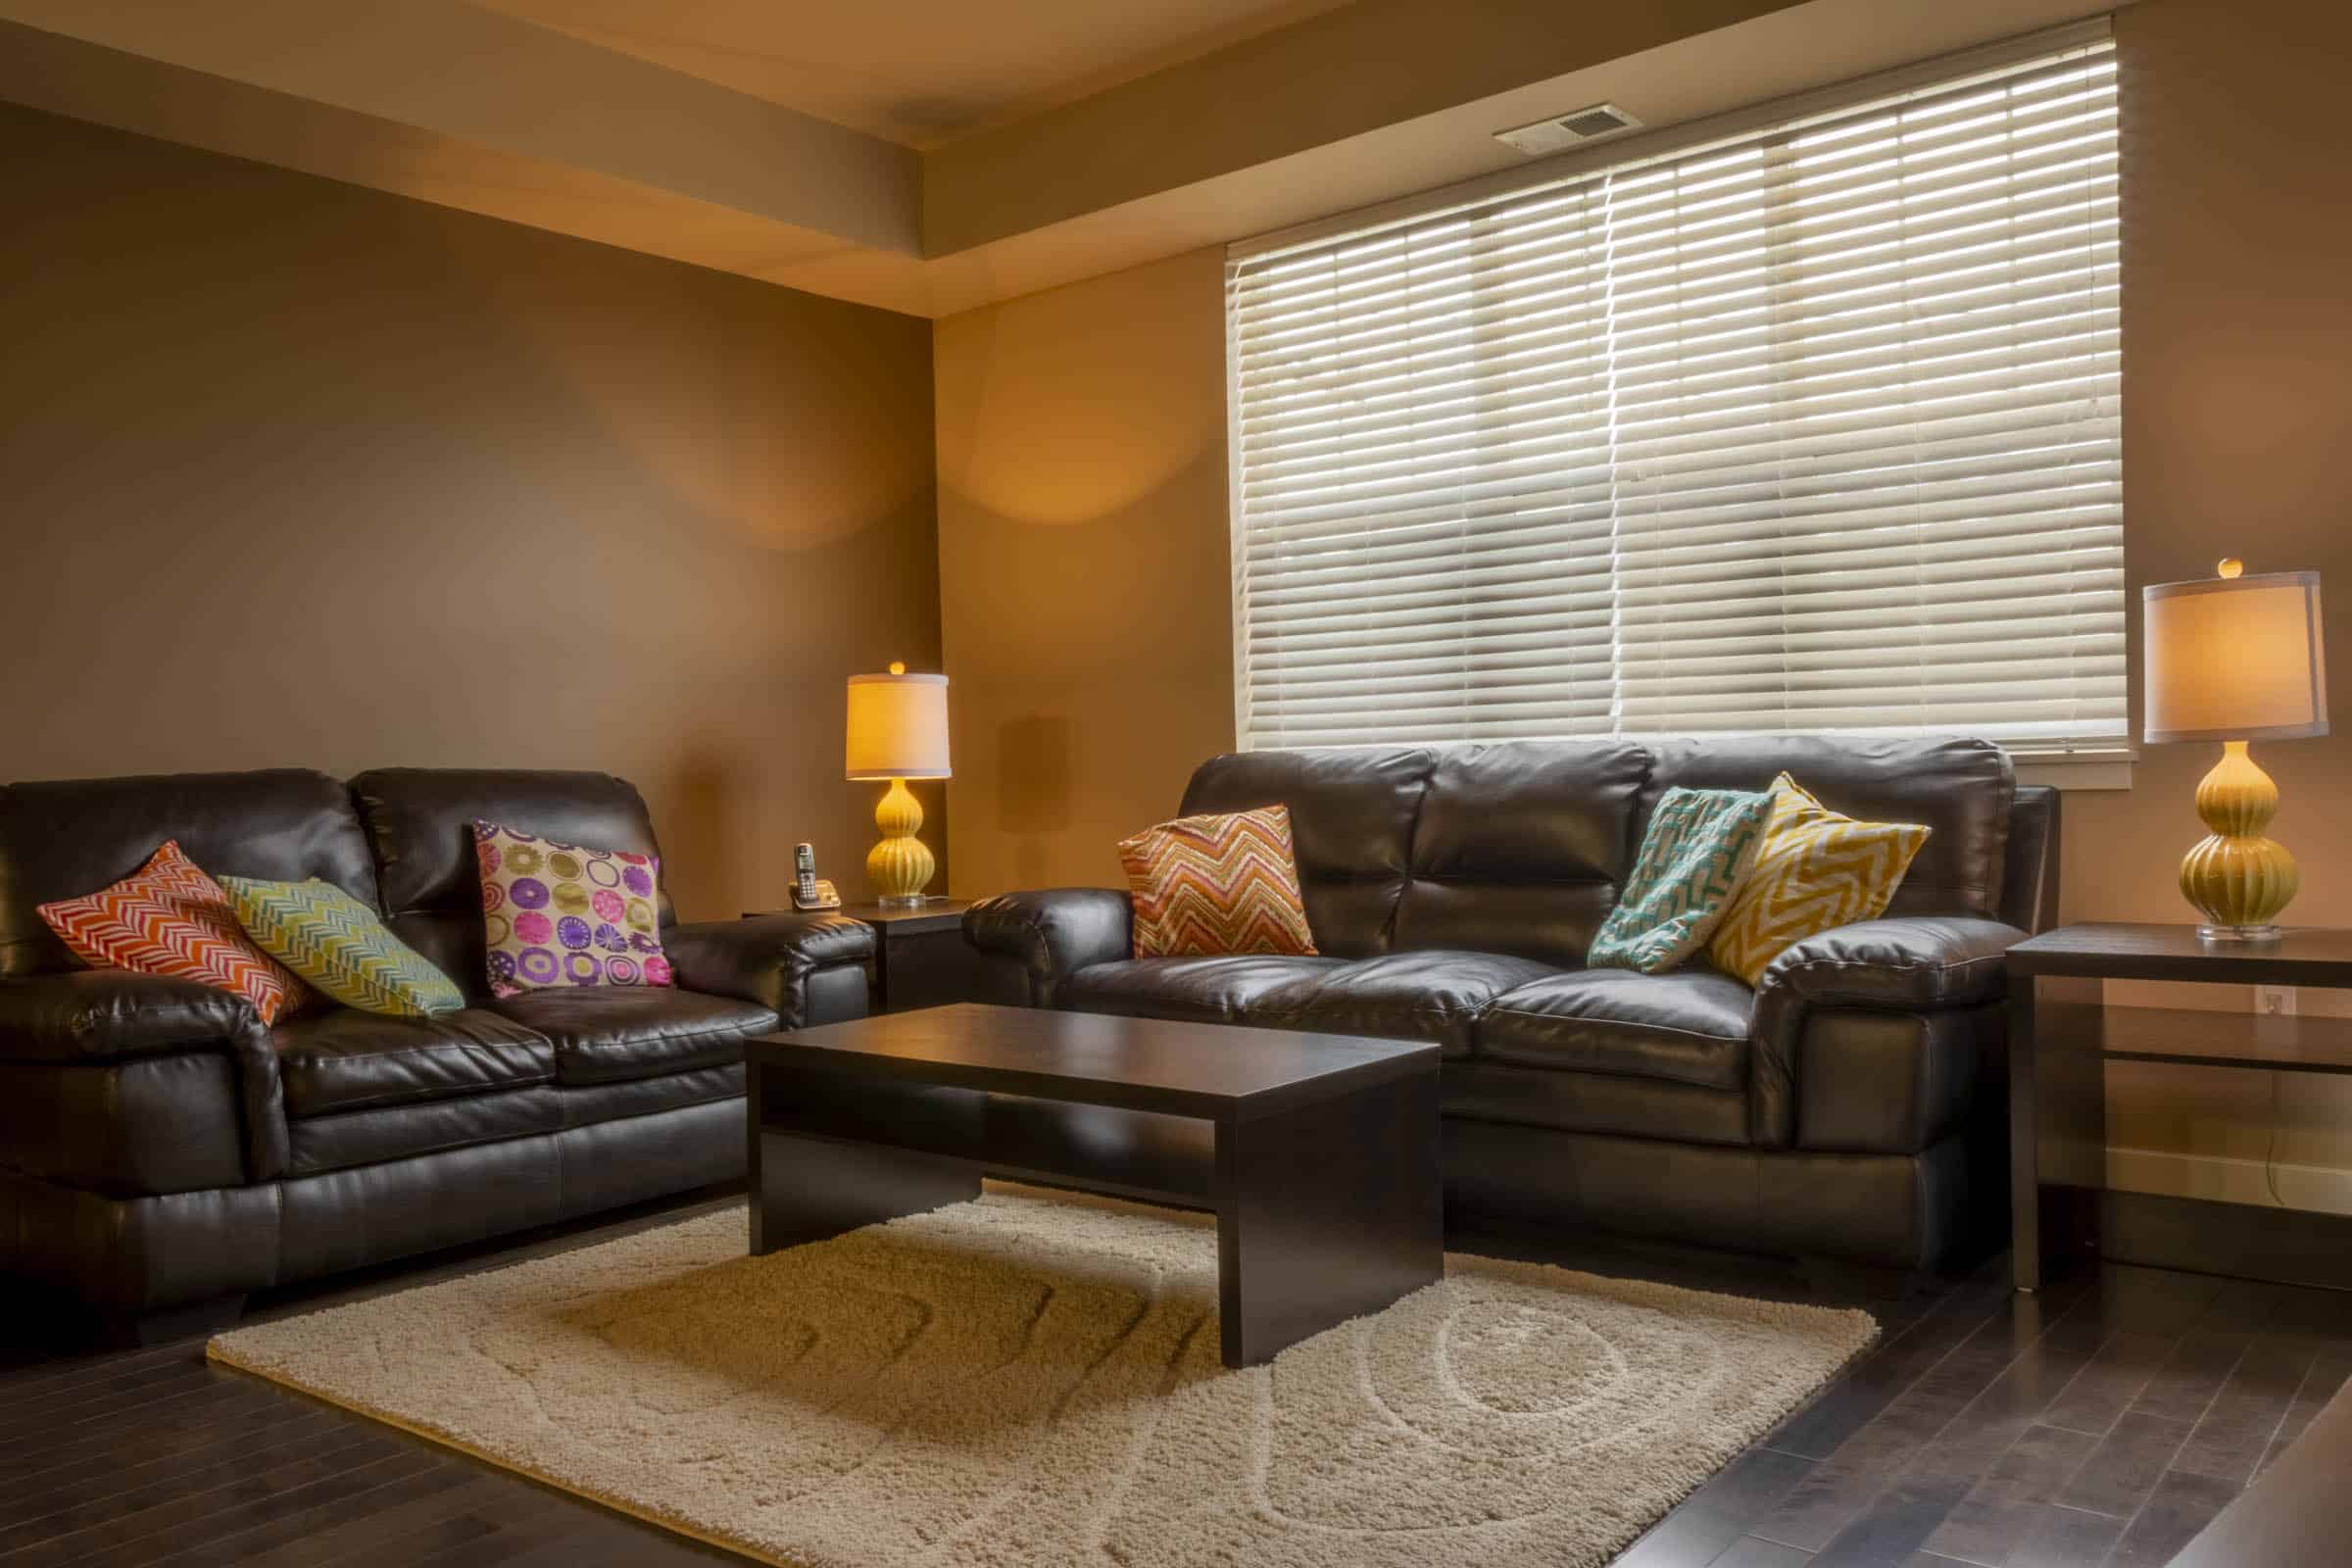 Regina furnished housing - Strathmore Suite 303 - Living Room